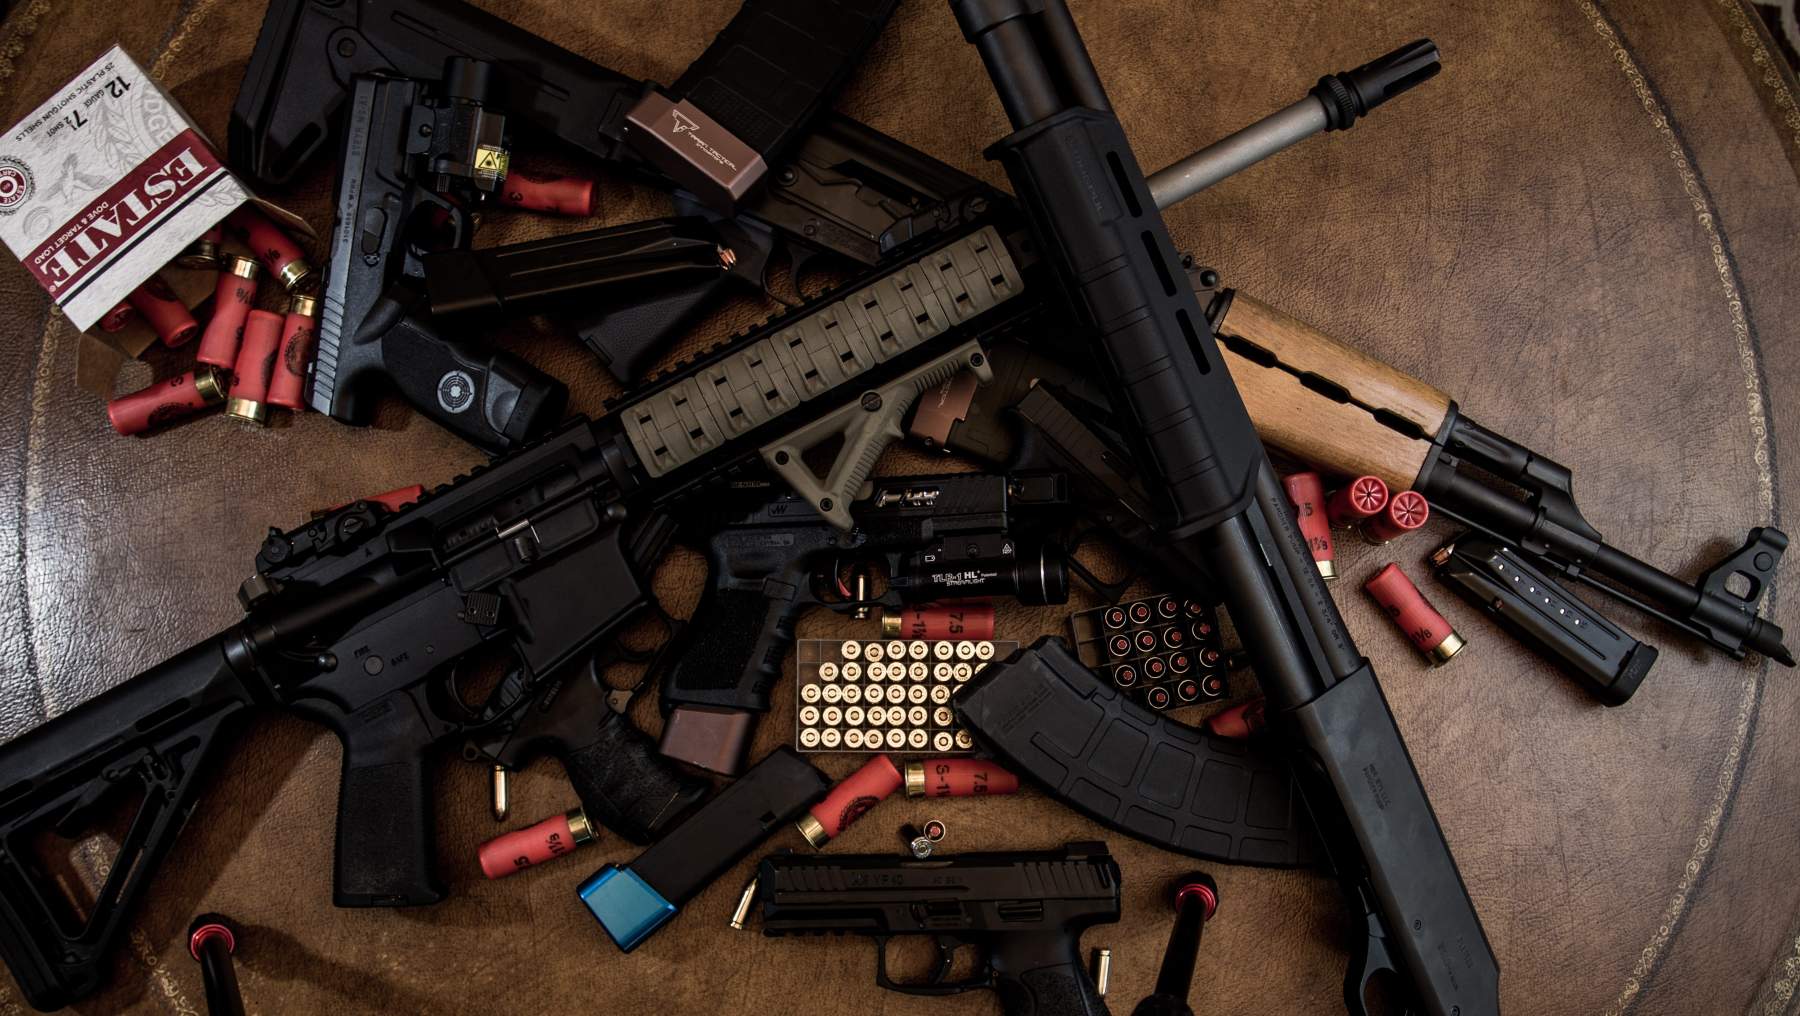 Seguridad ha decomisado 135 armas de fuego en lo que va del año